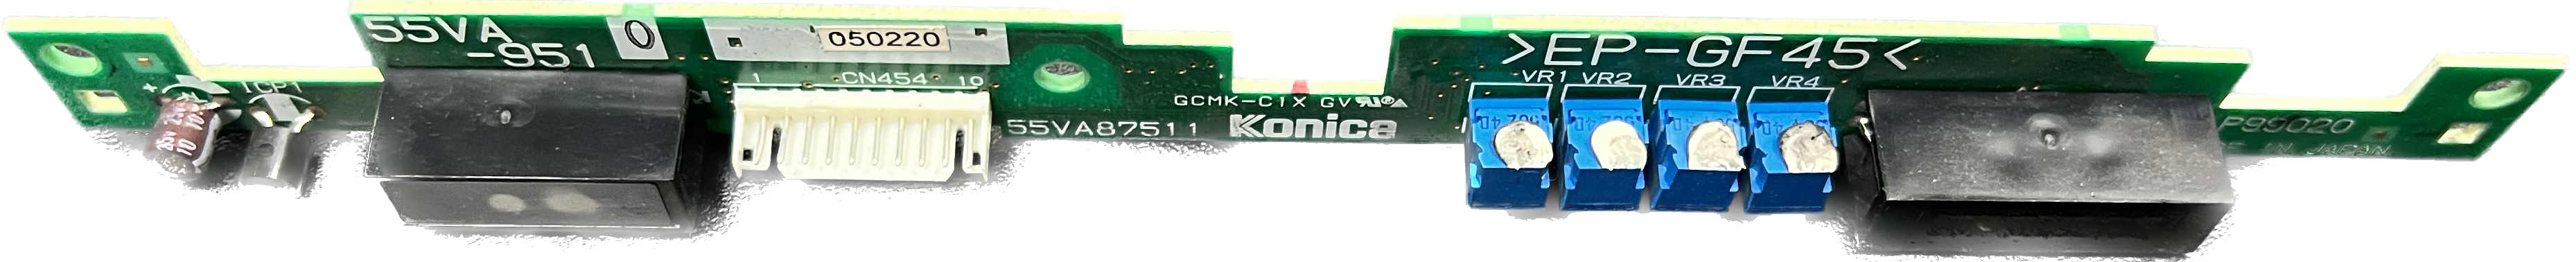 Konica Minolta Toner Control Base Plate Assy  | 55VA9510